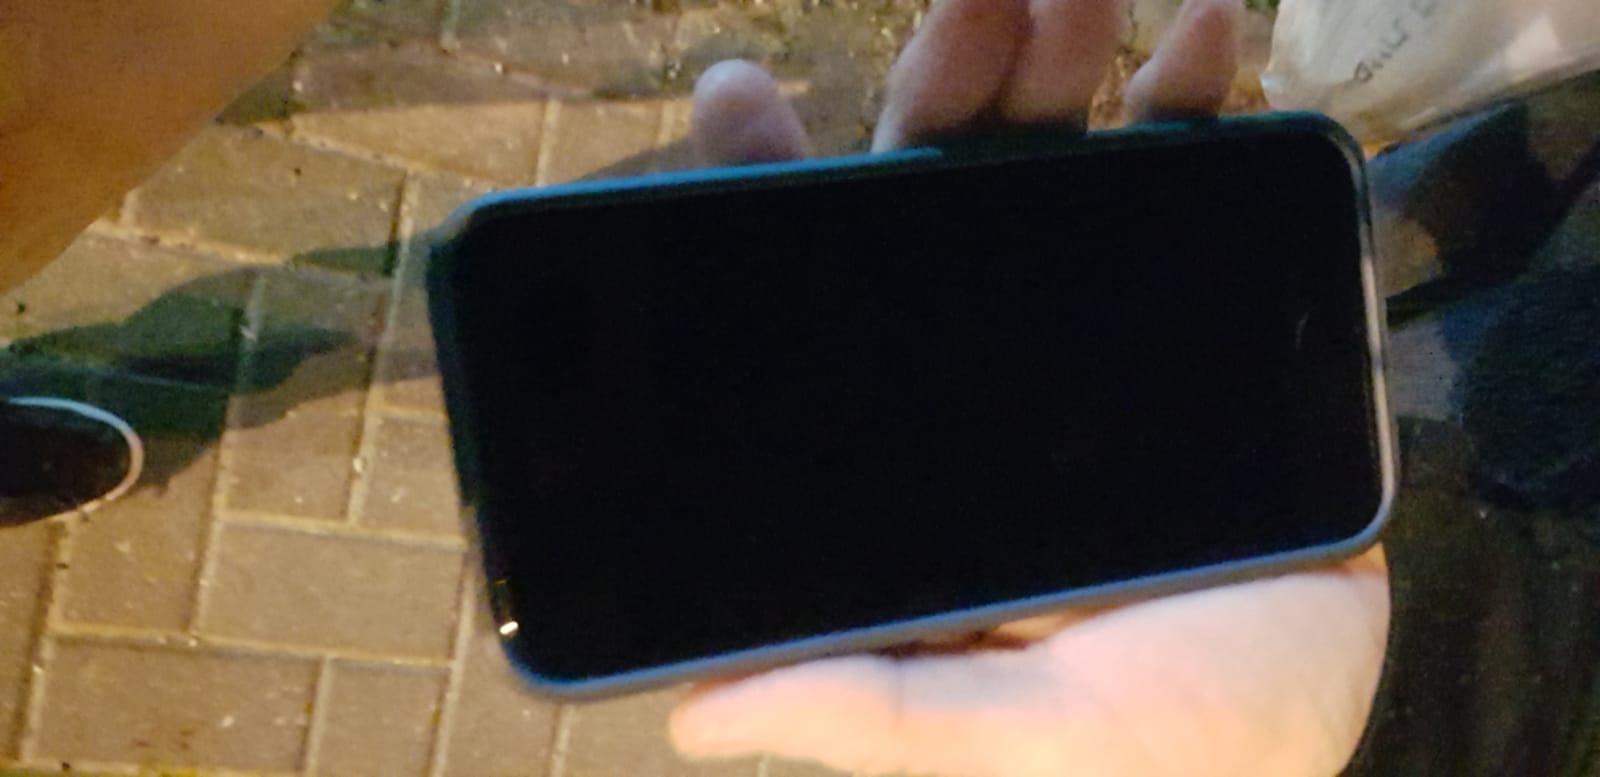 תמונה 1 ,איפון sE למכירה בתל אביב סלולרי  סמארטפונים